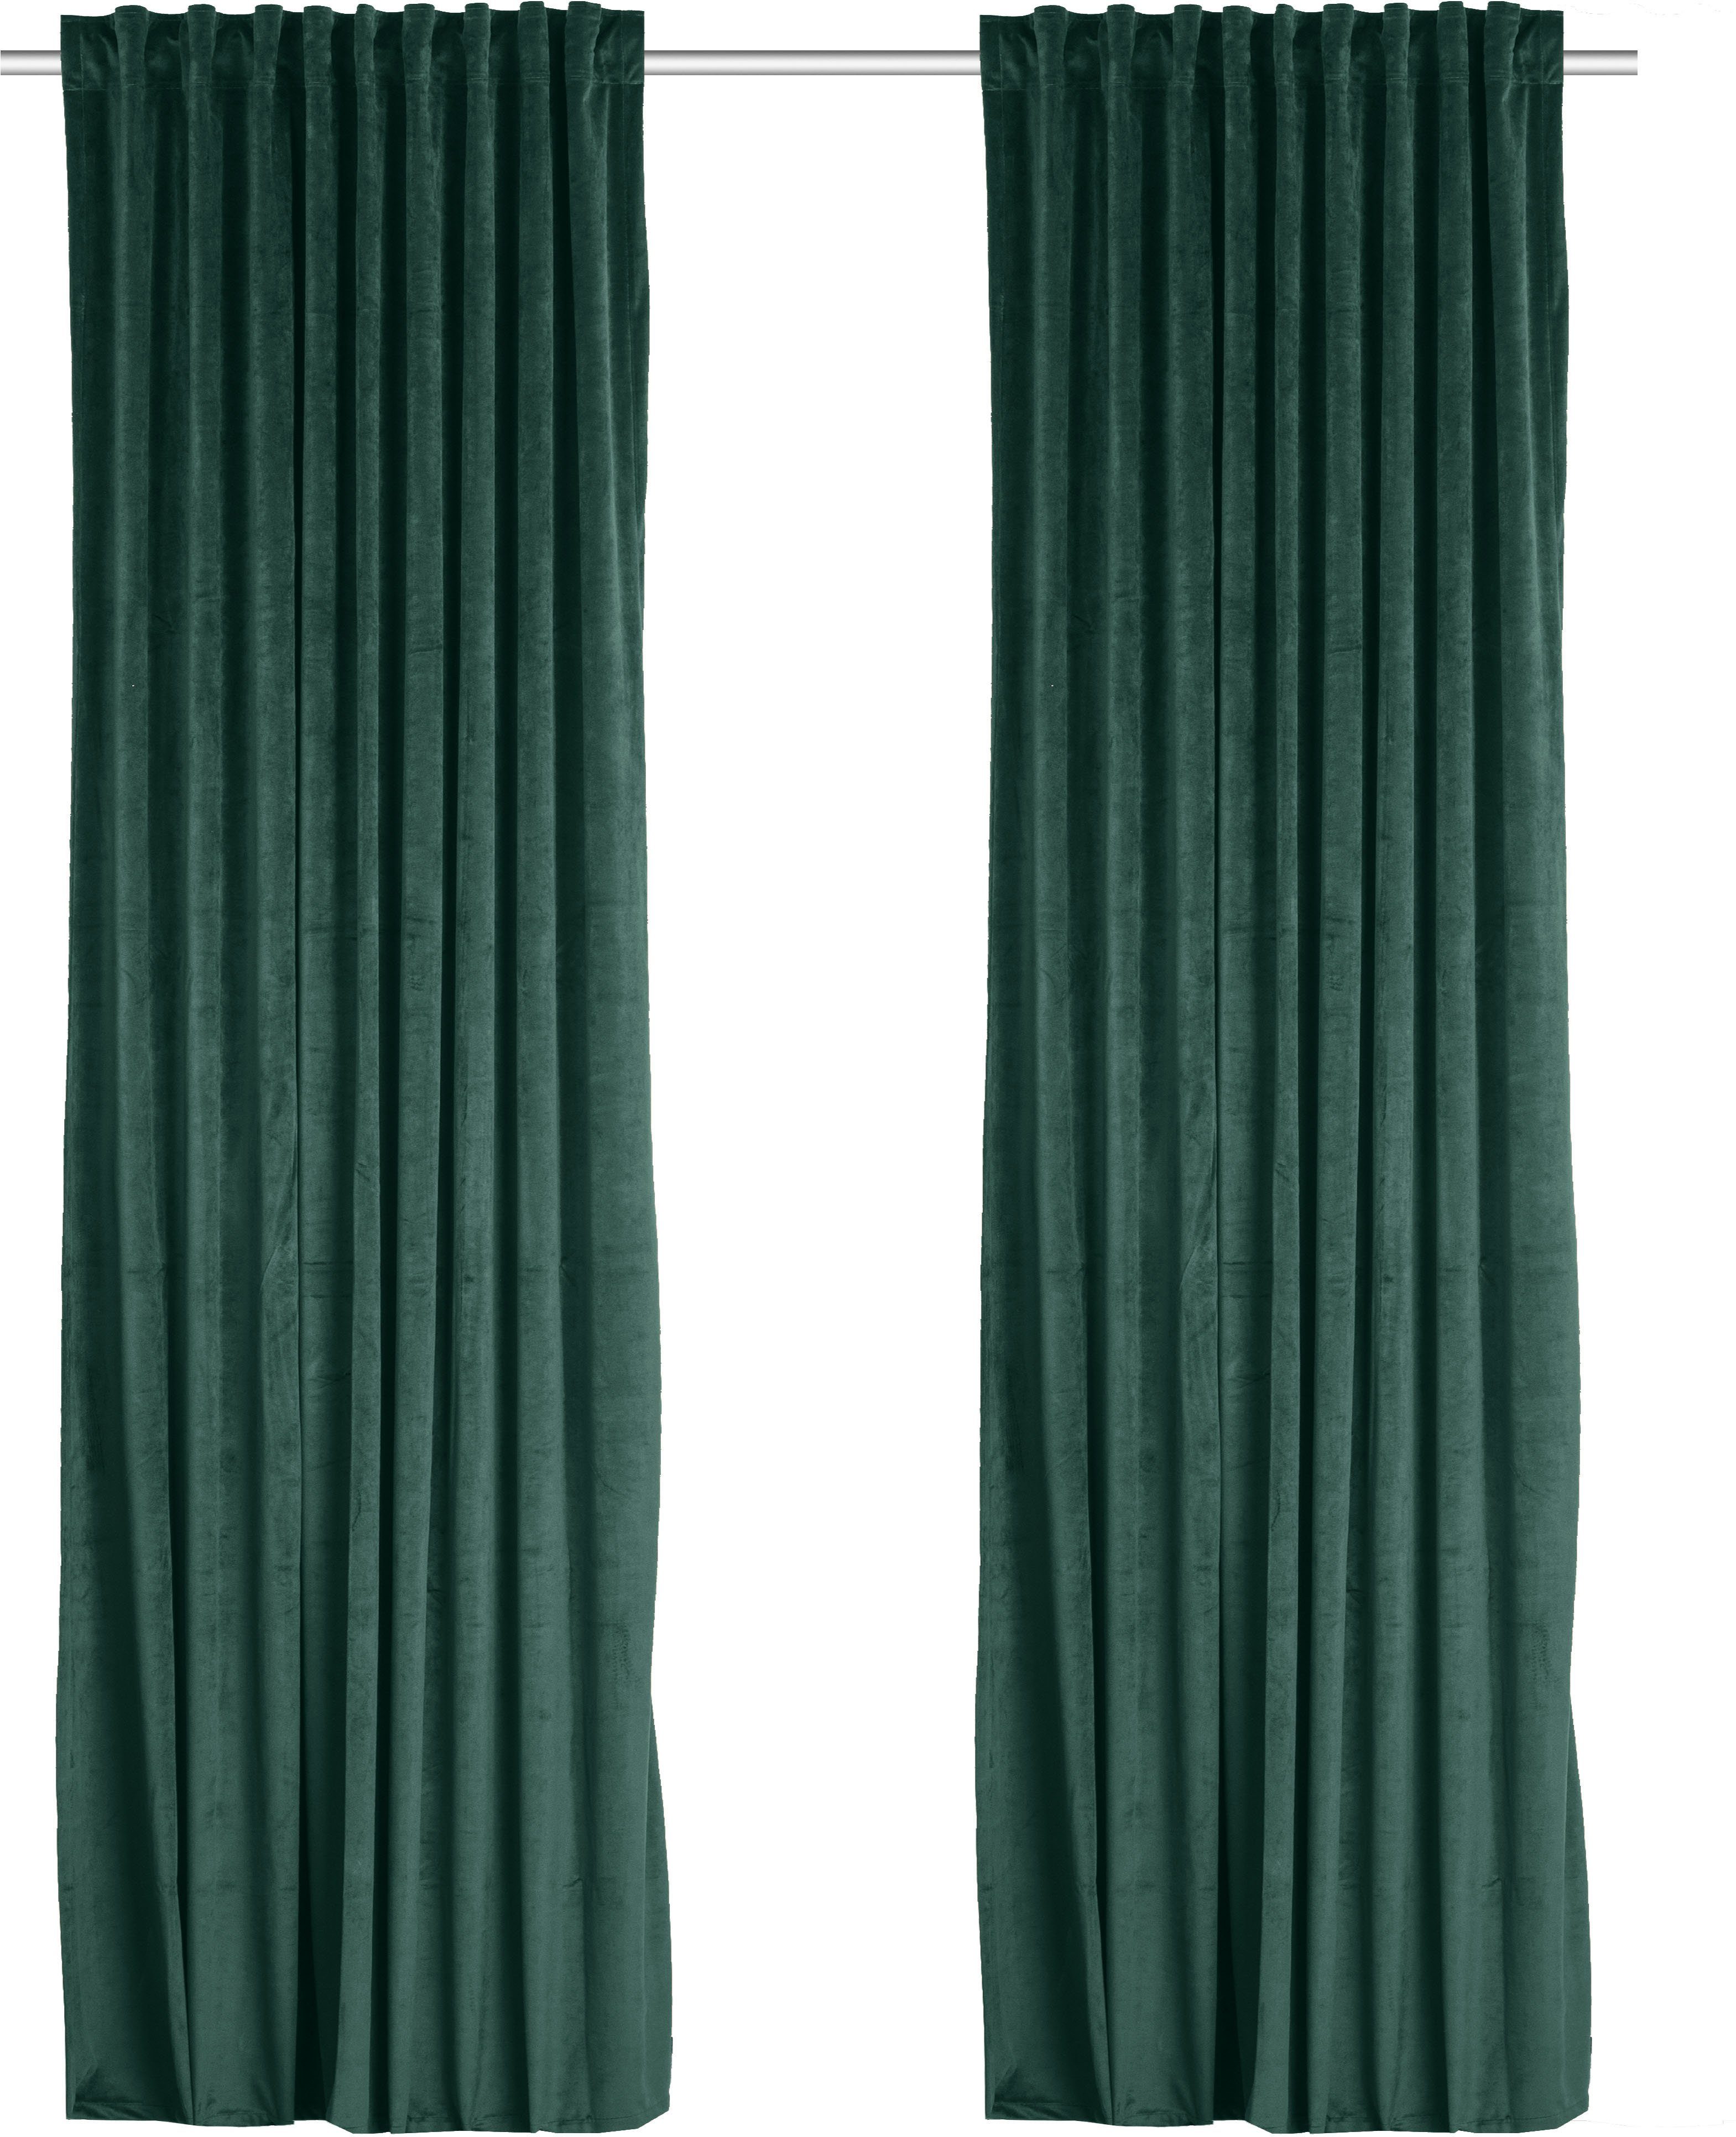 Vorhang Velvet uni, my home, Multifunktionsband (2 St), blickdicht, Samt dunkelgrün